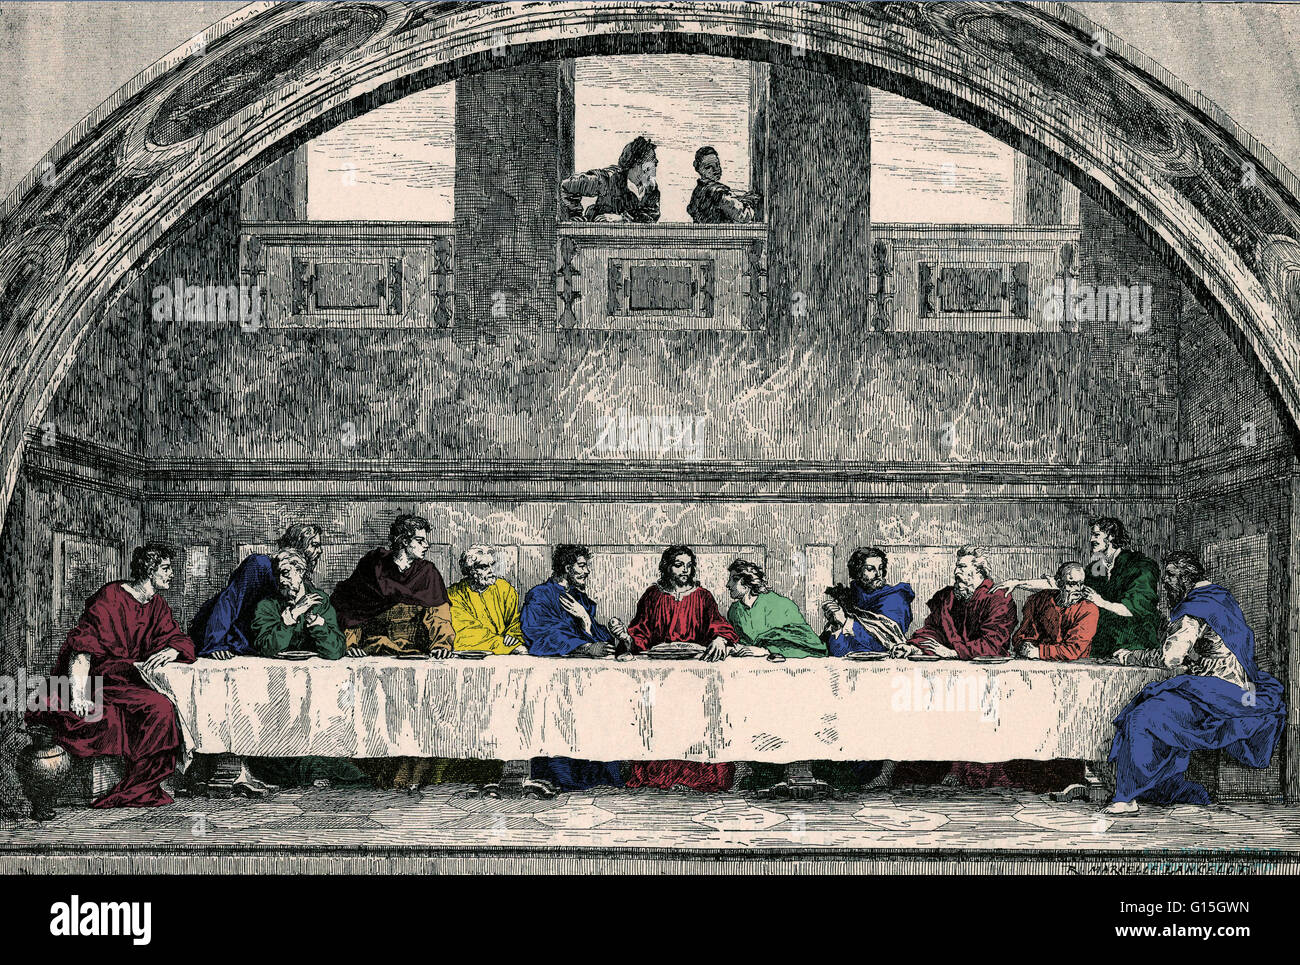 Dans les Évangiles chrétiens, la cène est le dernier repas Jésus partage avec les Douze Apôtres avant sa mort. Beaucoup de Chrétiens croient que Jésus institua l'Eucharistie d'abord à son repas quand il a offert son corps et son sang aux apôtres dans le pour Banque D'Images